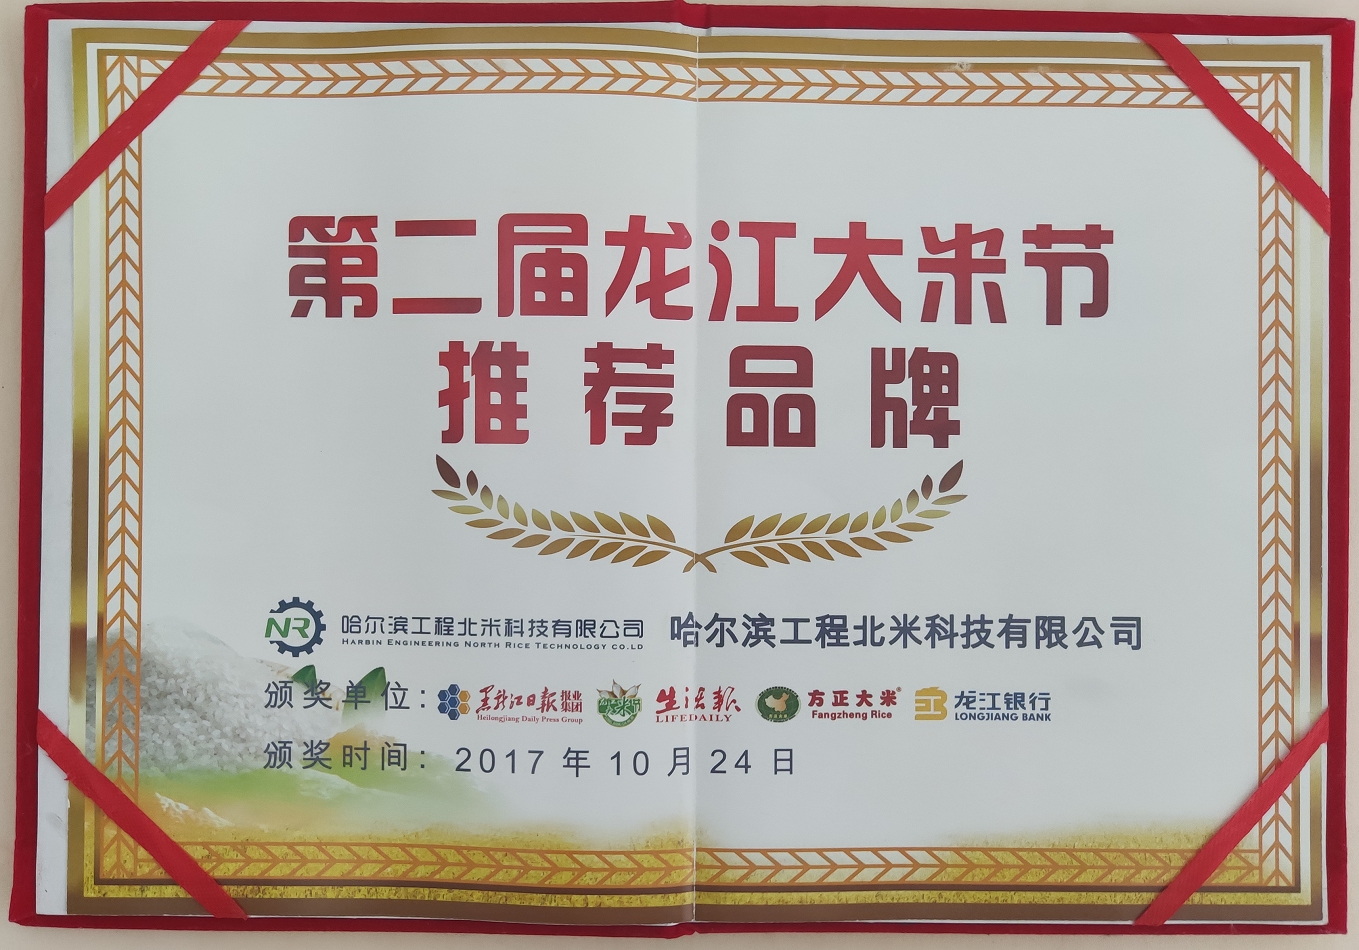 2017年獲得第二屆龍江大米節推薦品牌